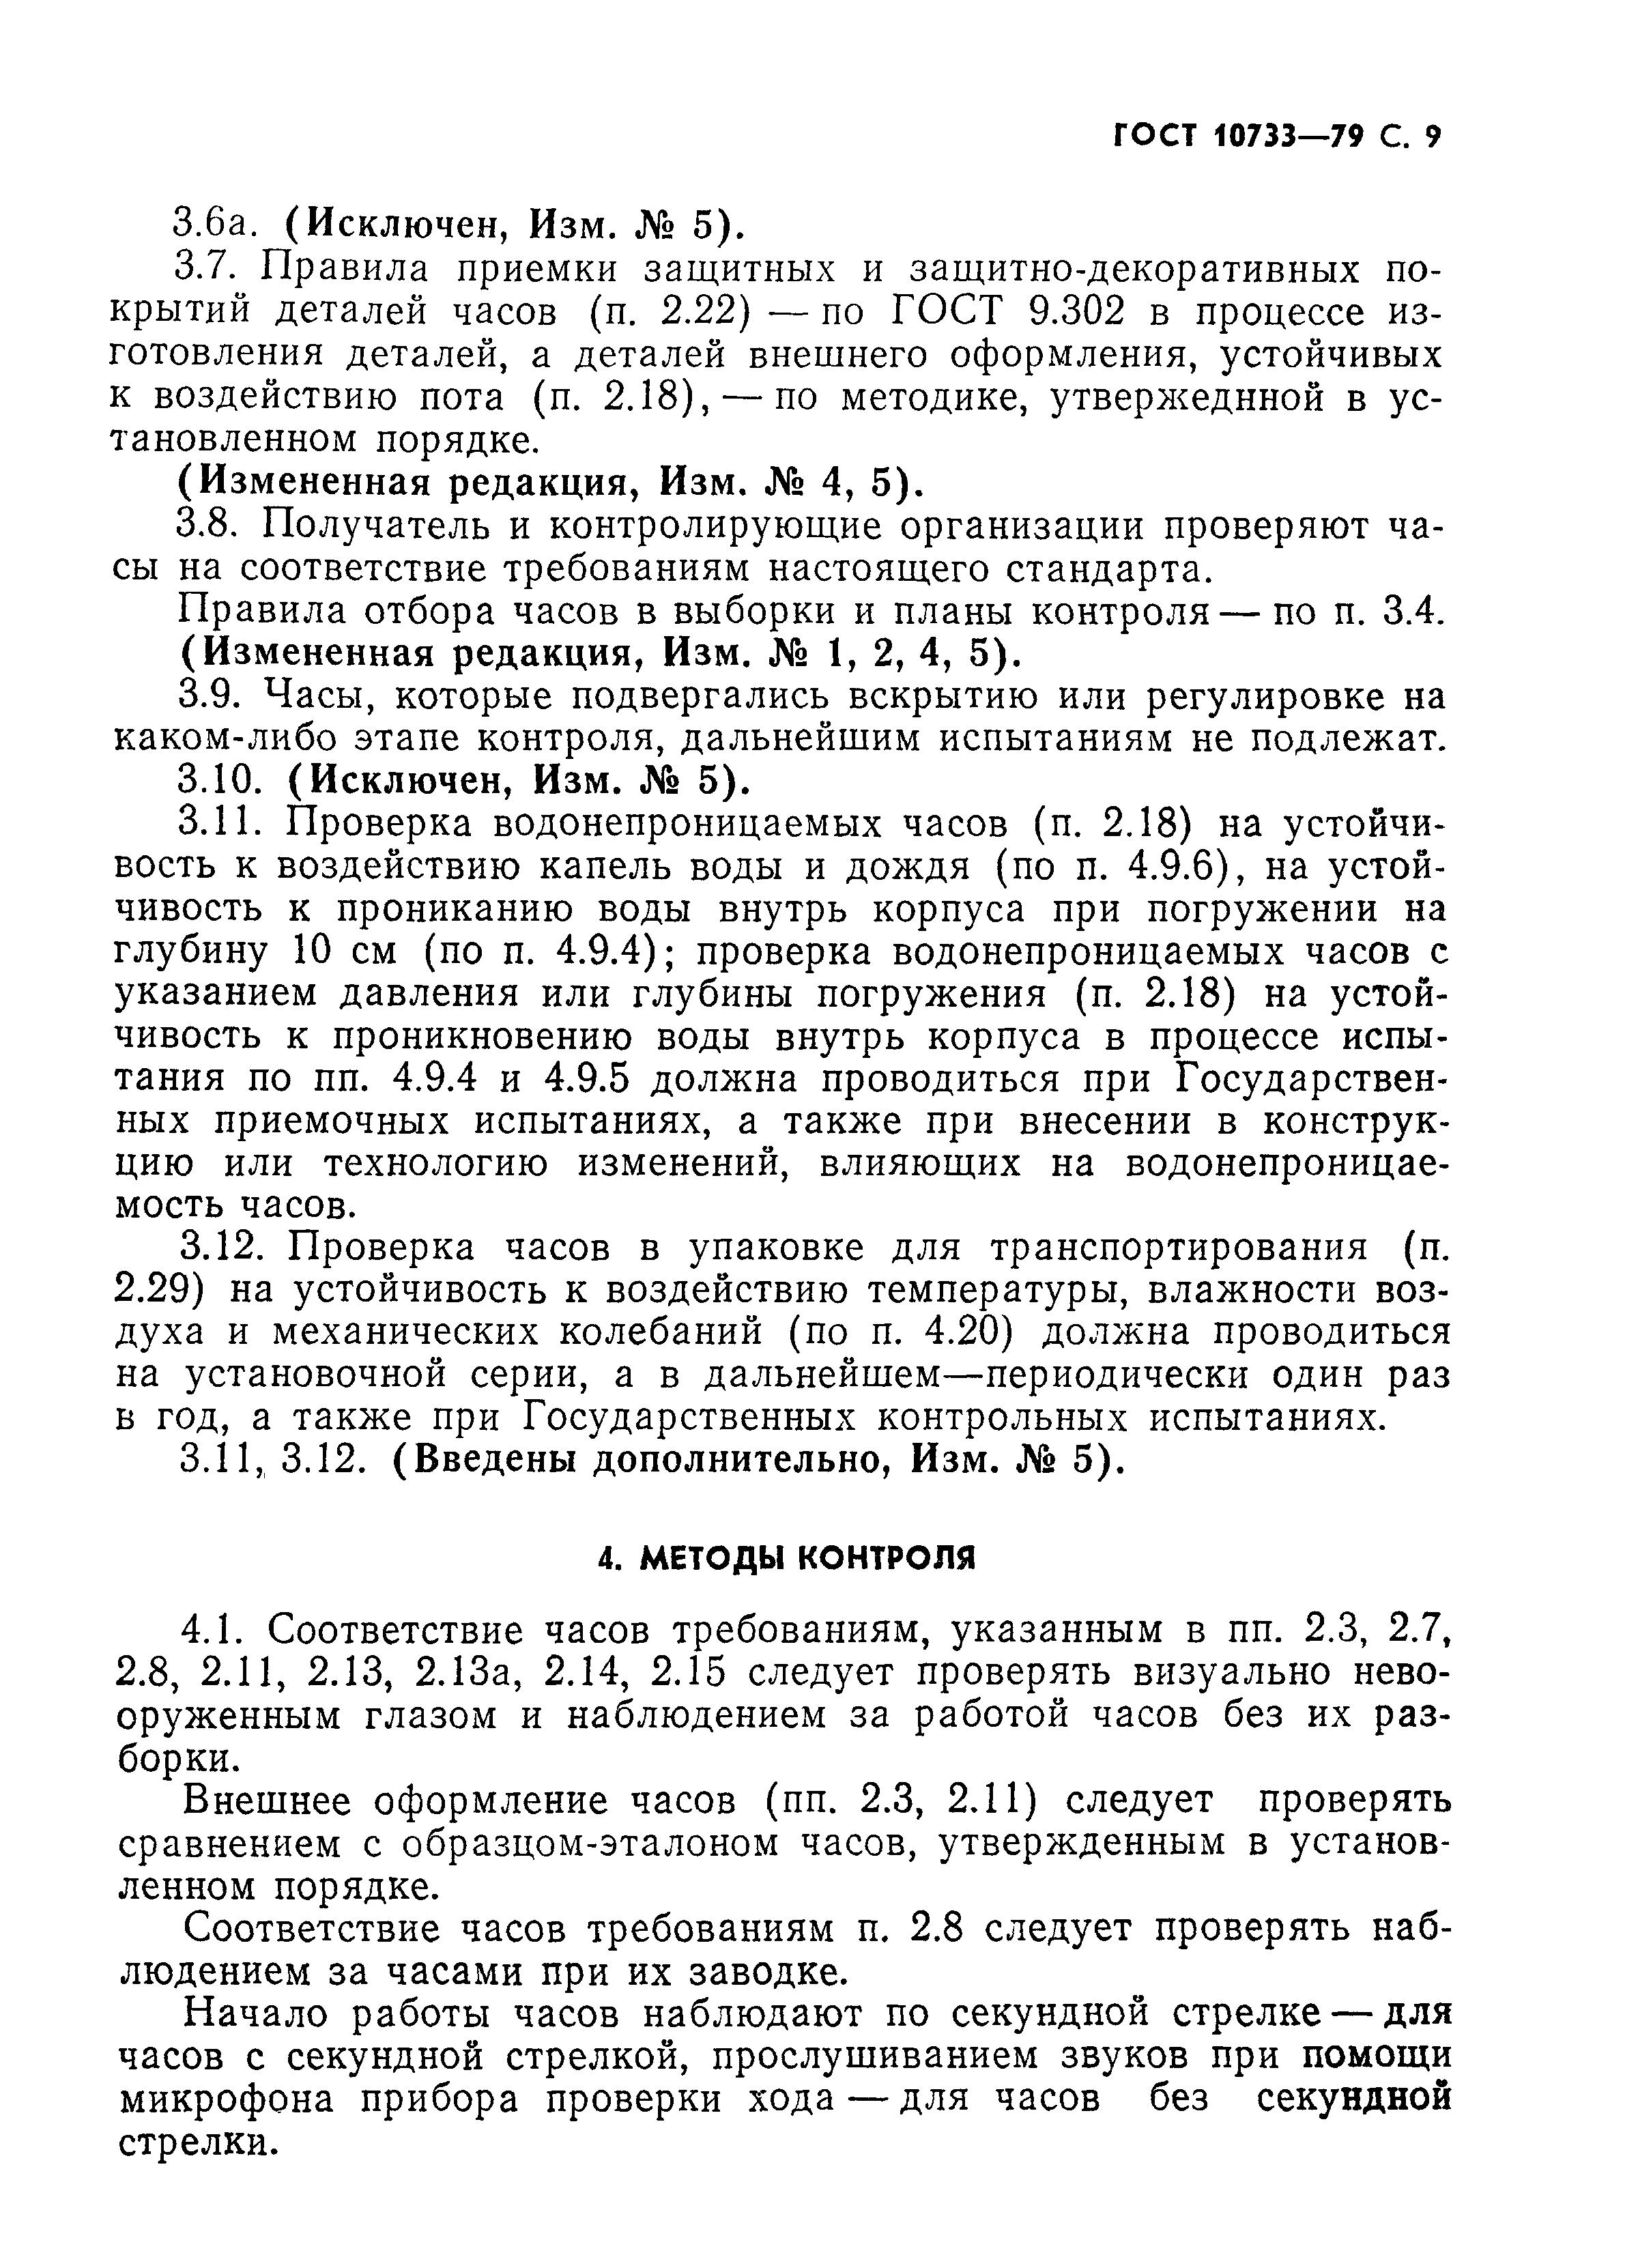 ГОСТ 10733-79, страница 10.